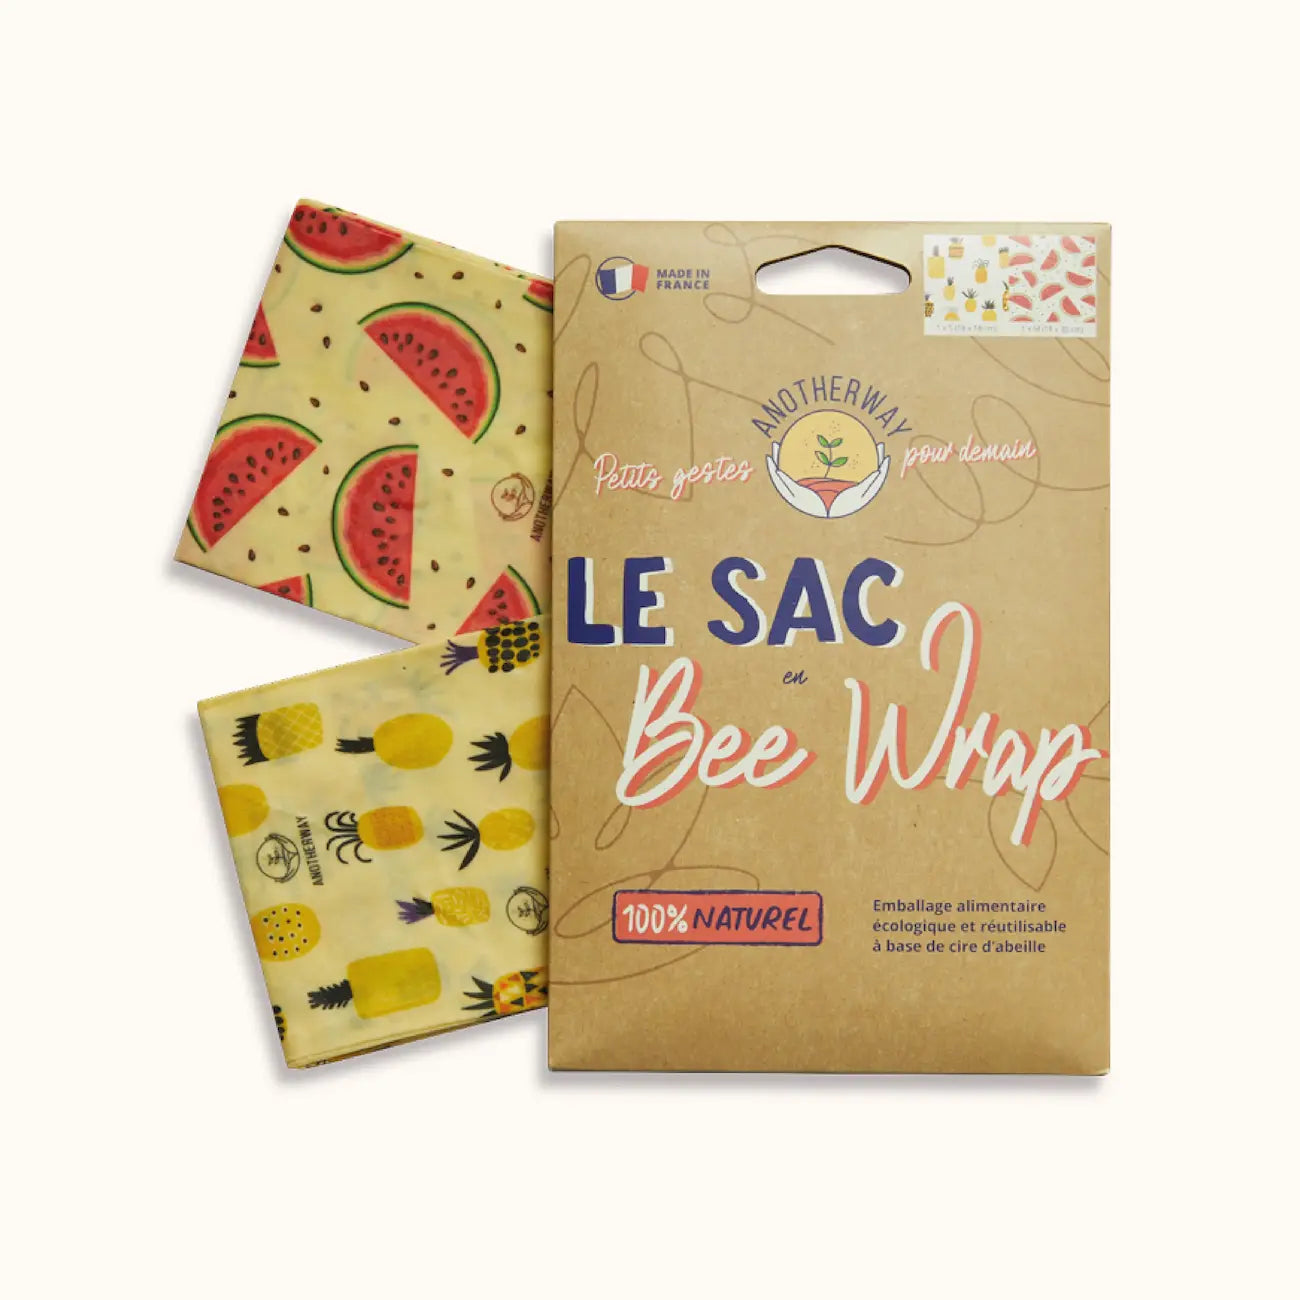 Sacs en Bee Wrap. Emballage alimentaire écologique